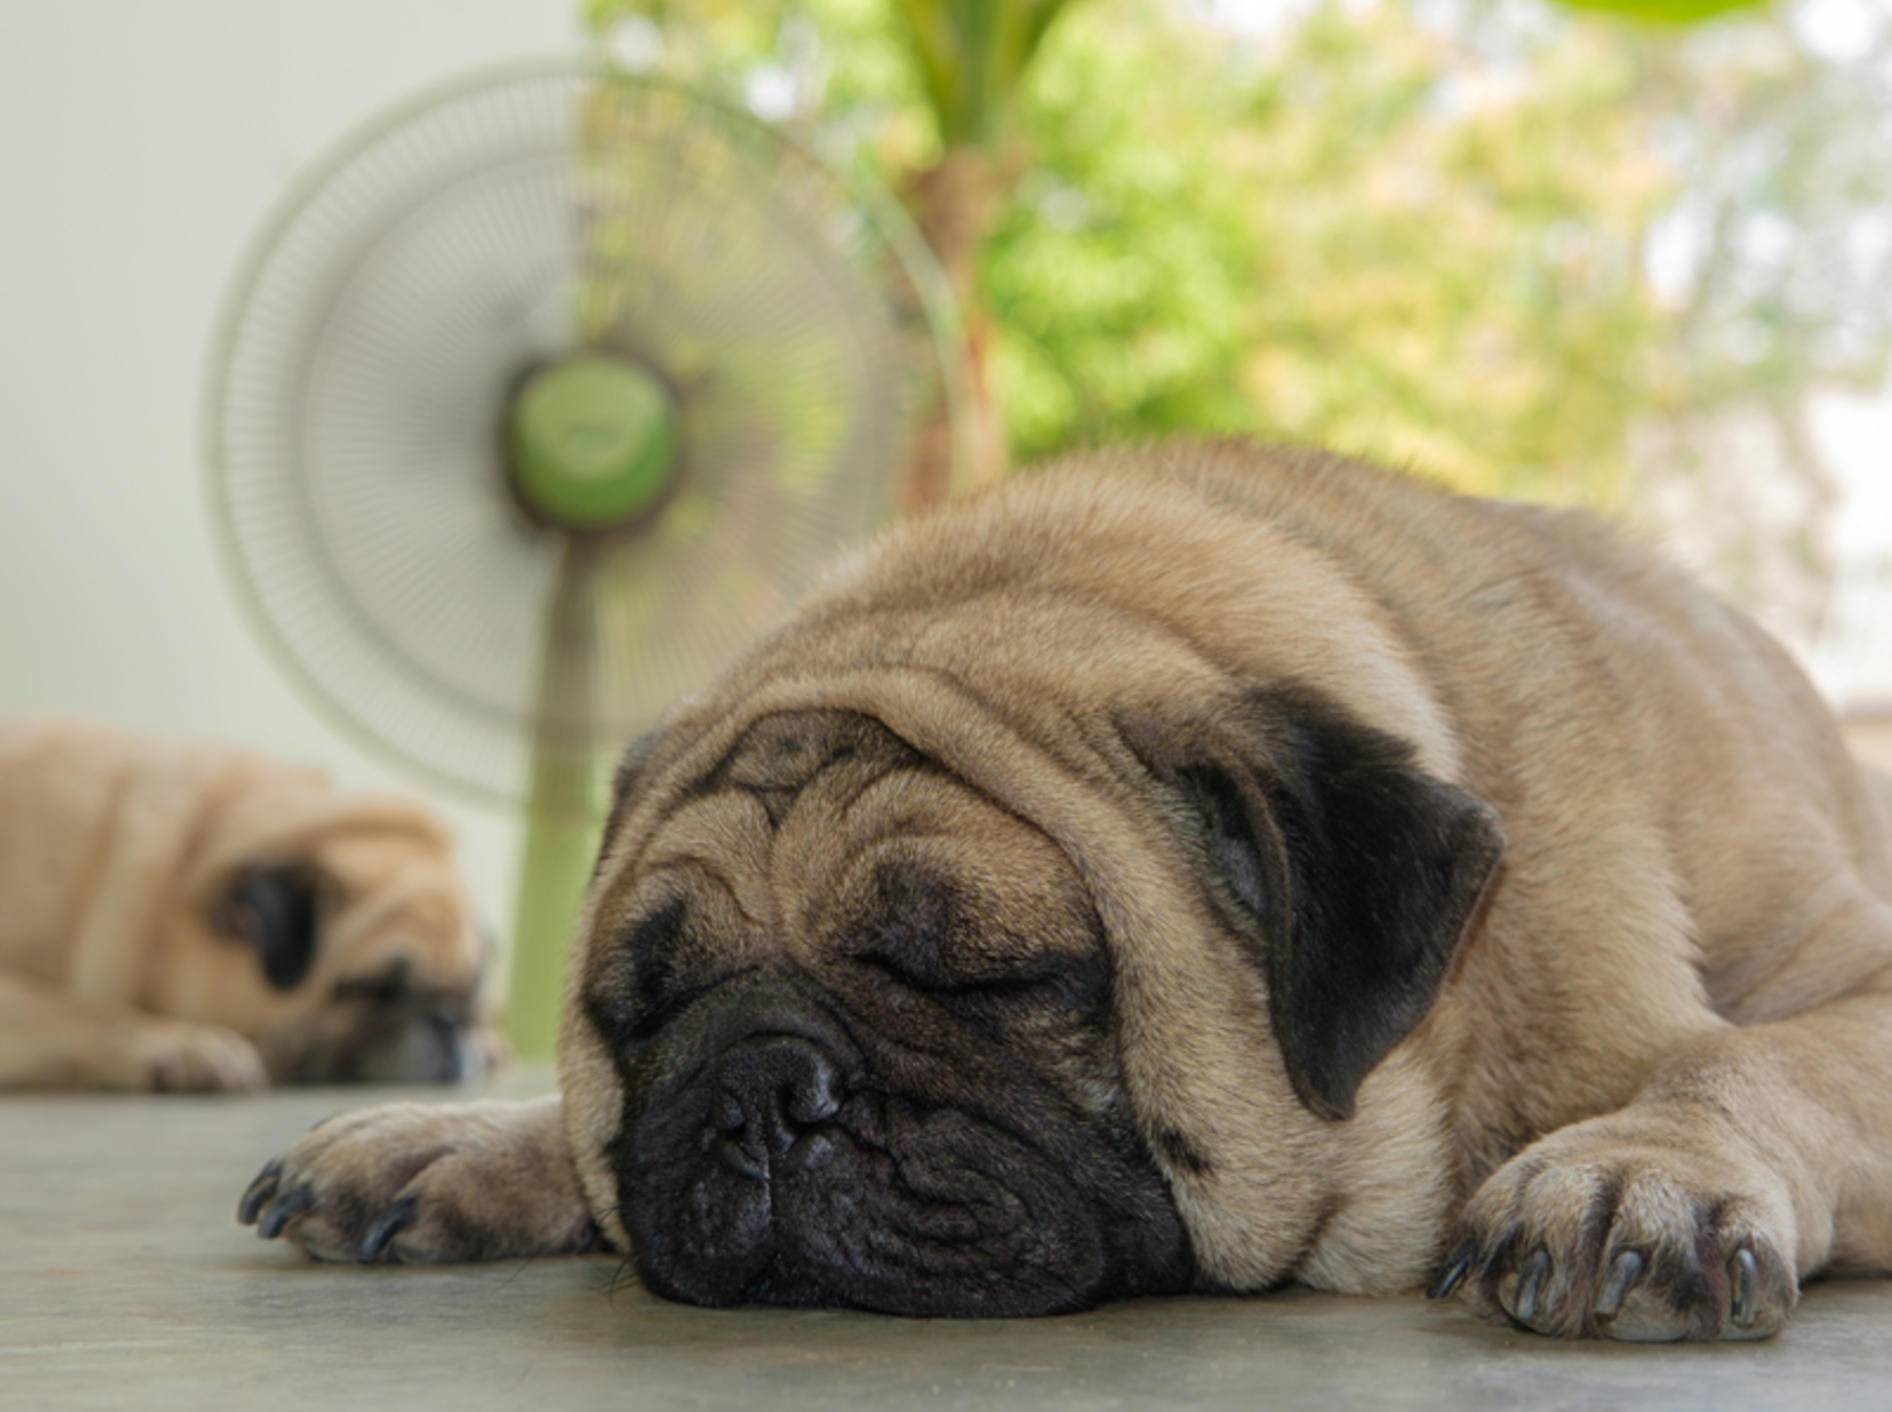 Achtung! Zugluft vom Ventilator ist nicht gut für Hunde und andere Haustiere – Shutterstock / Ezzolo